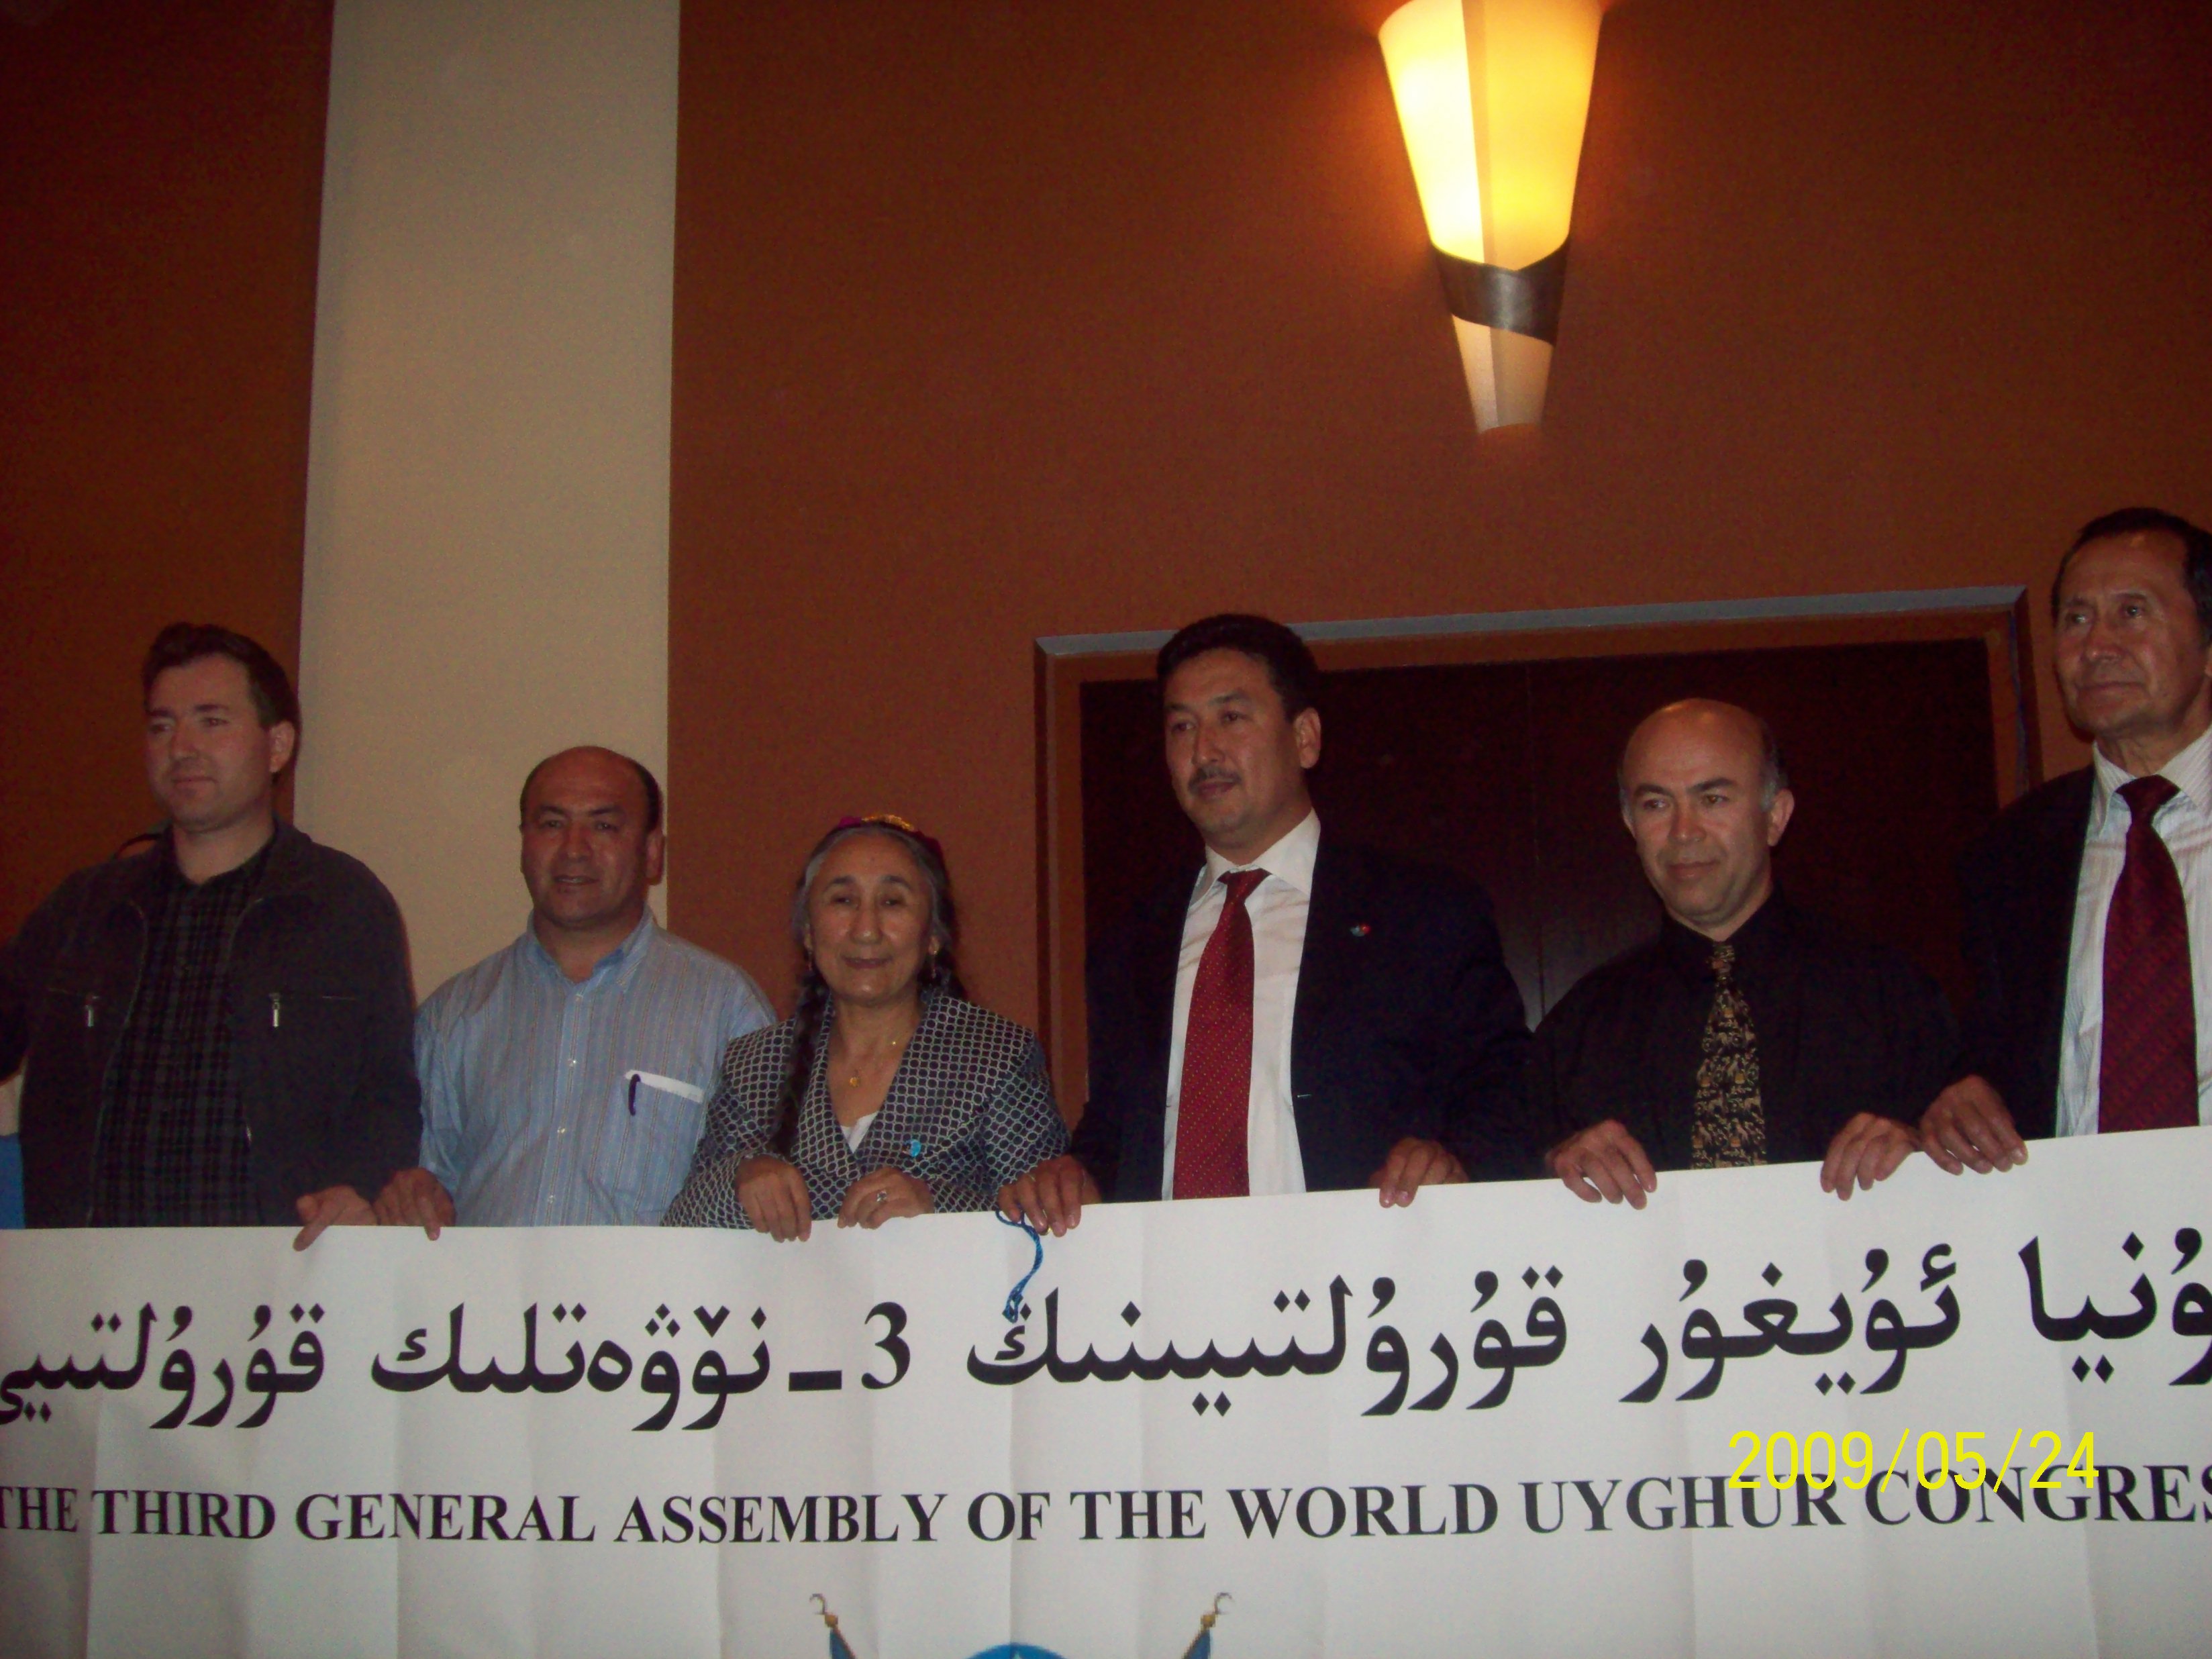 فيادة المؤتمر فى جمعية العامة الثالثة (بين مايو 2009 وابريل 2012)